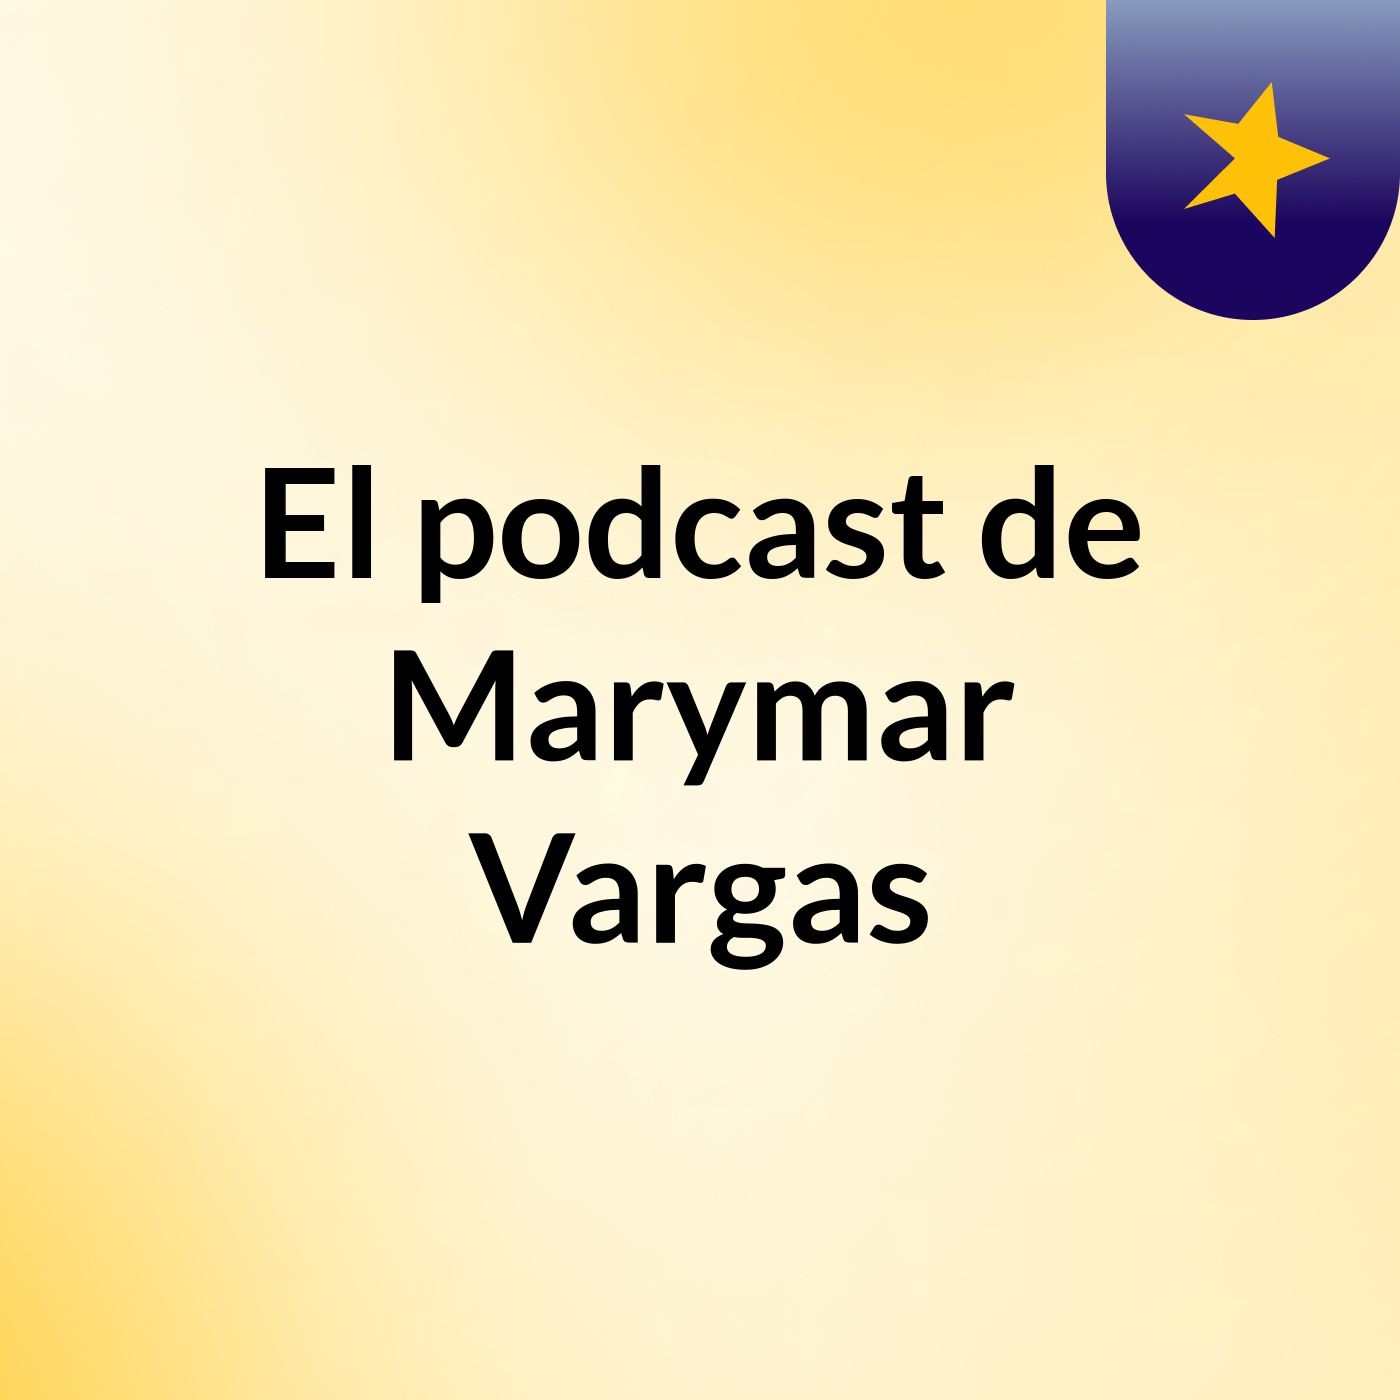 El podcast de Marymar Vargas